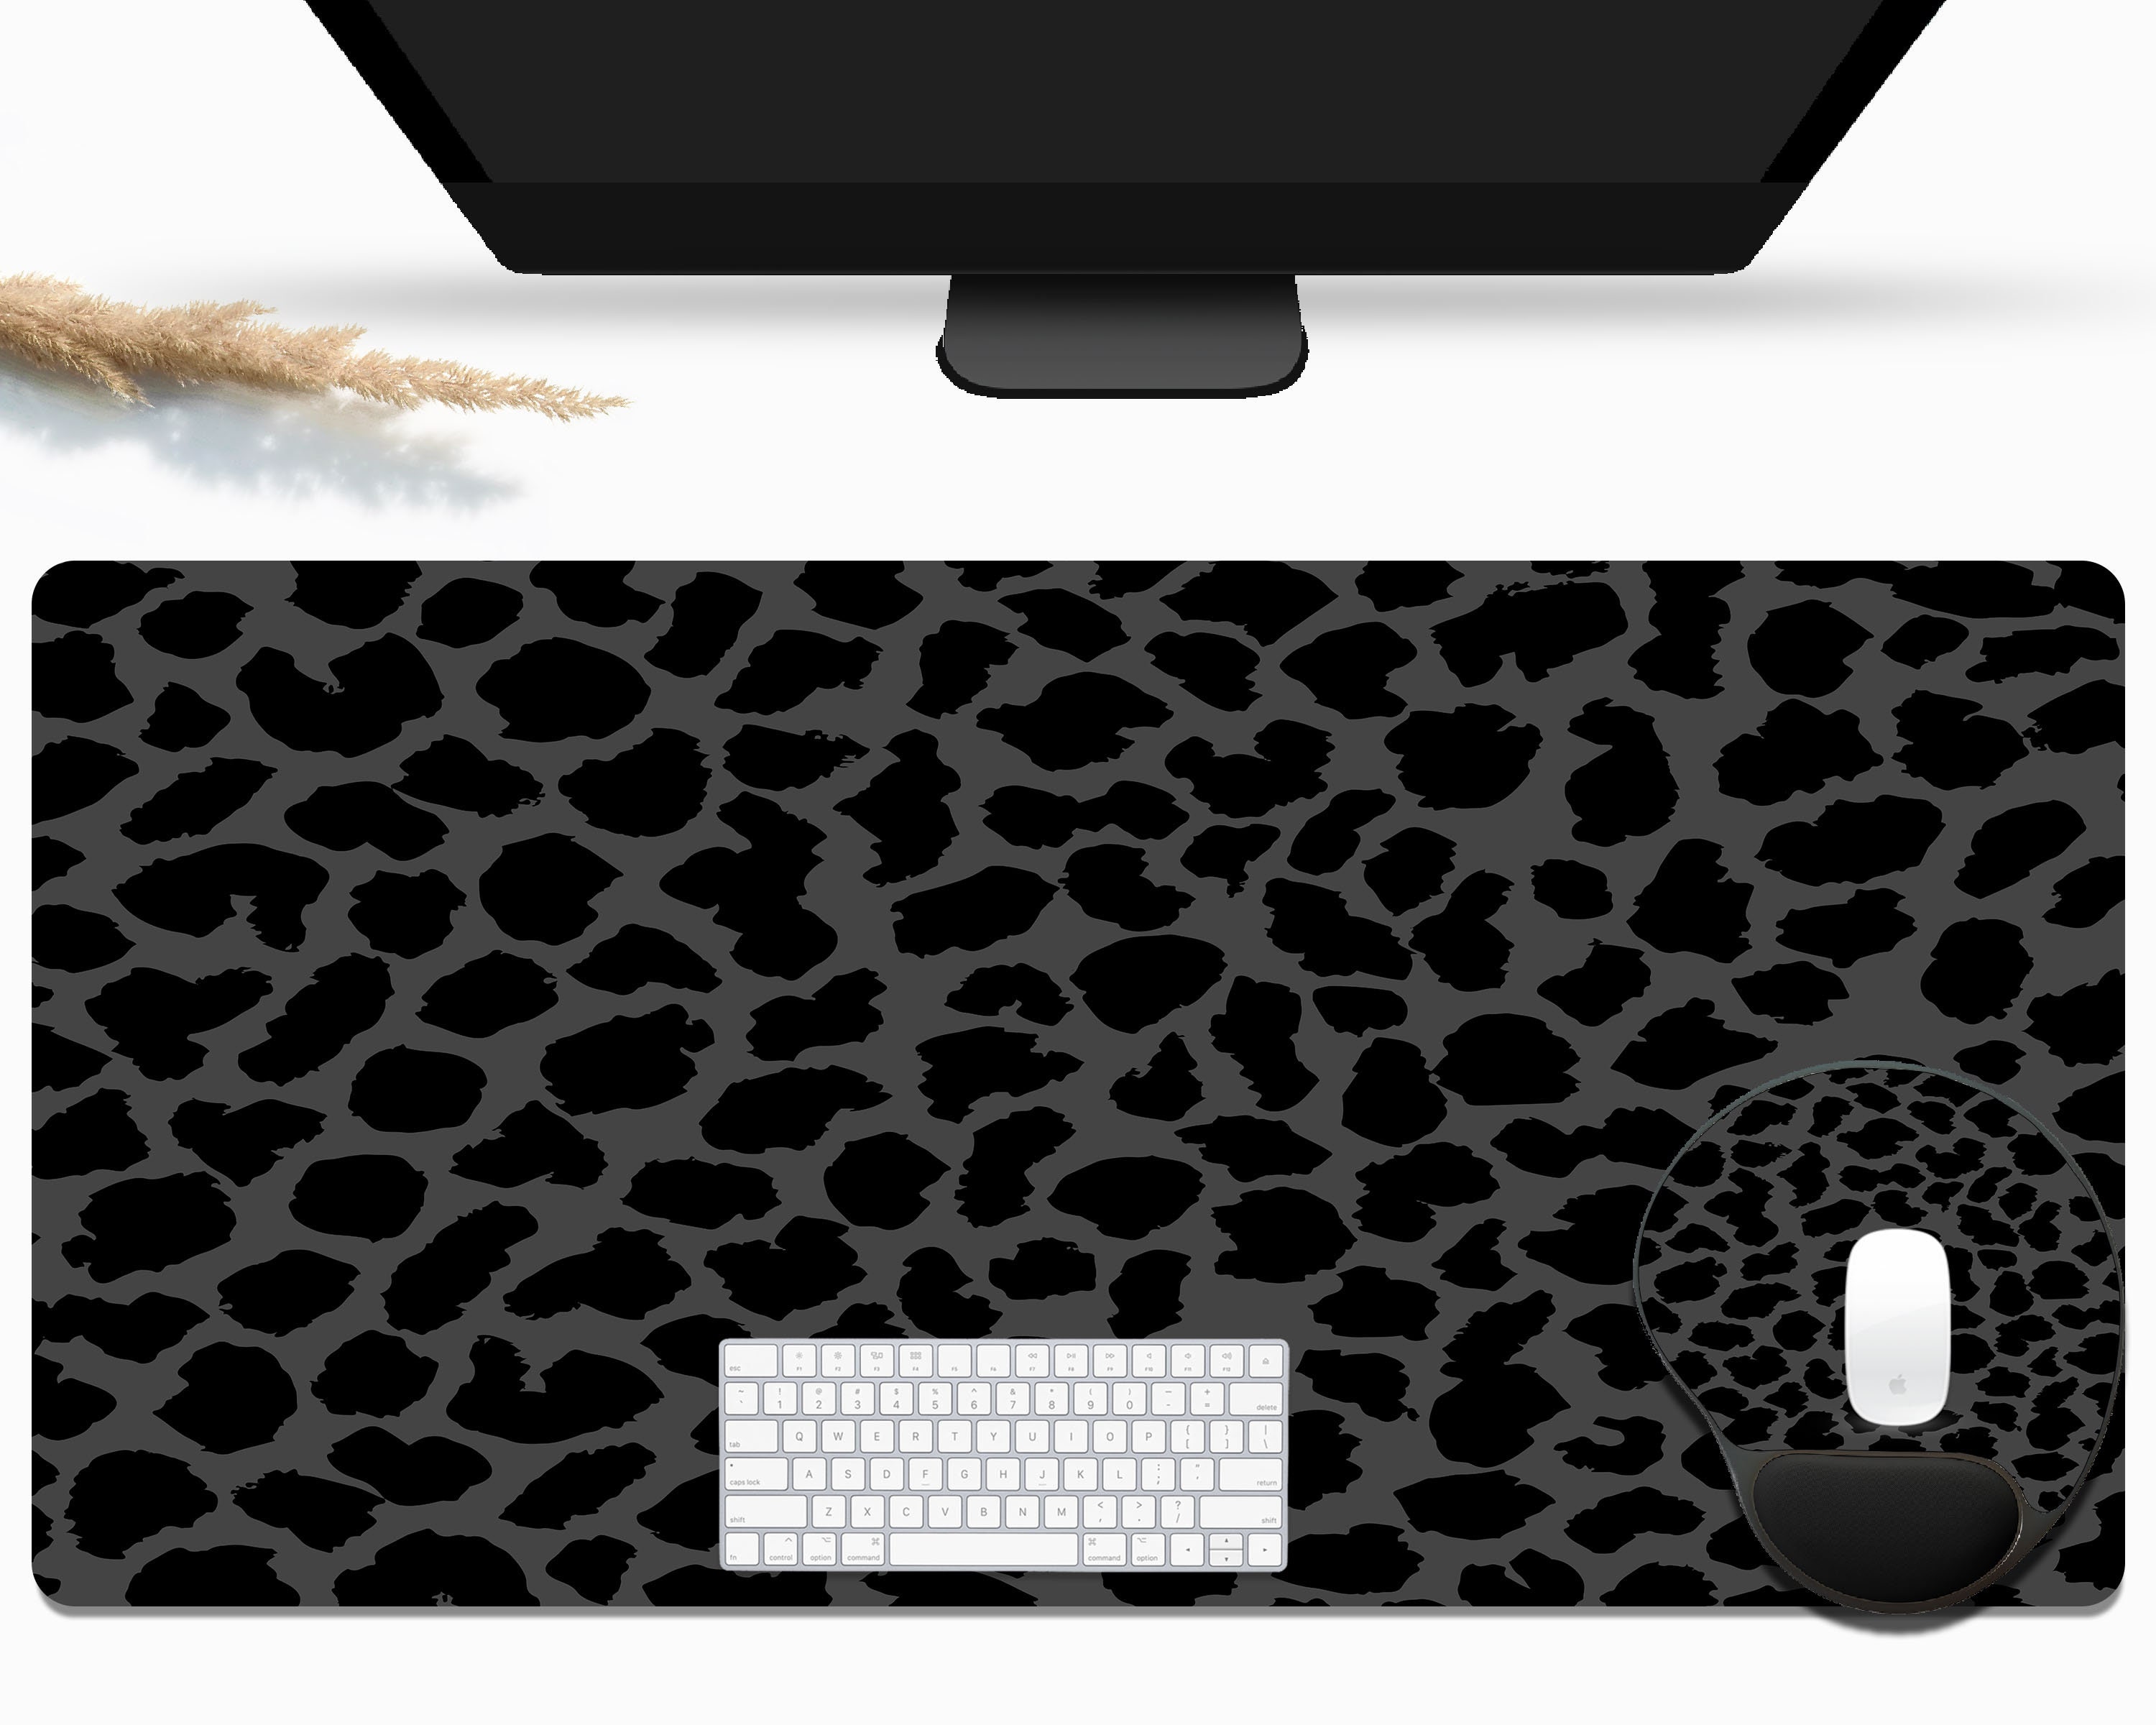 Desk Leopard Cute 